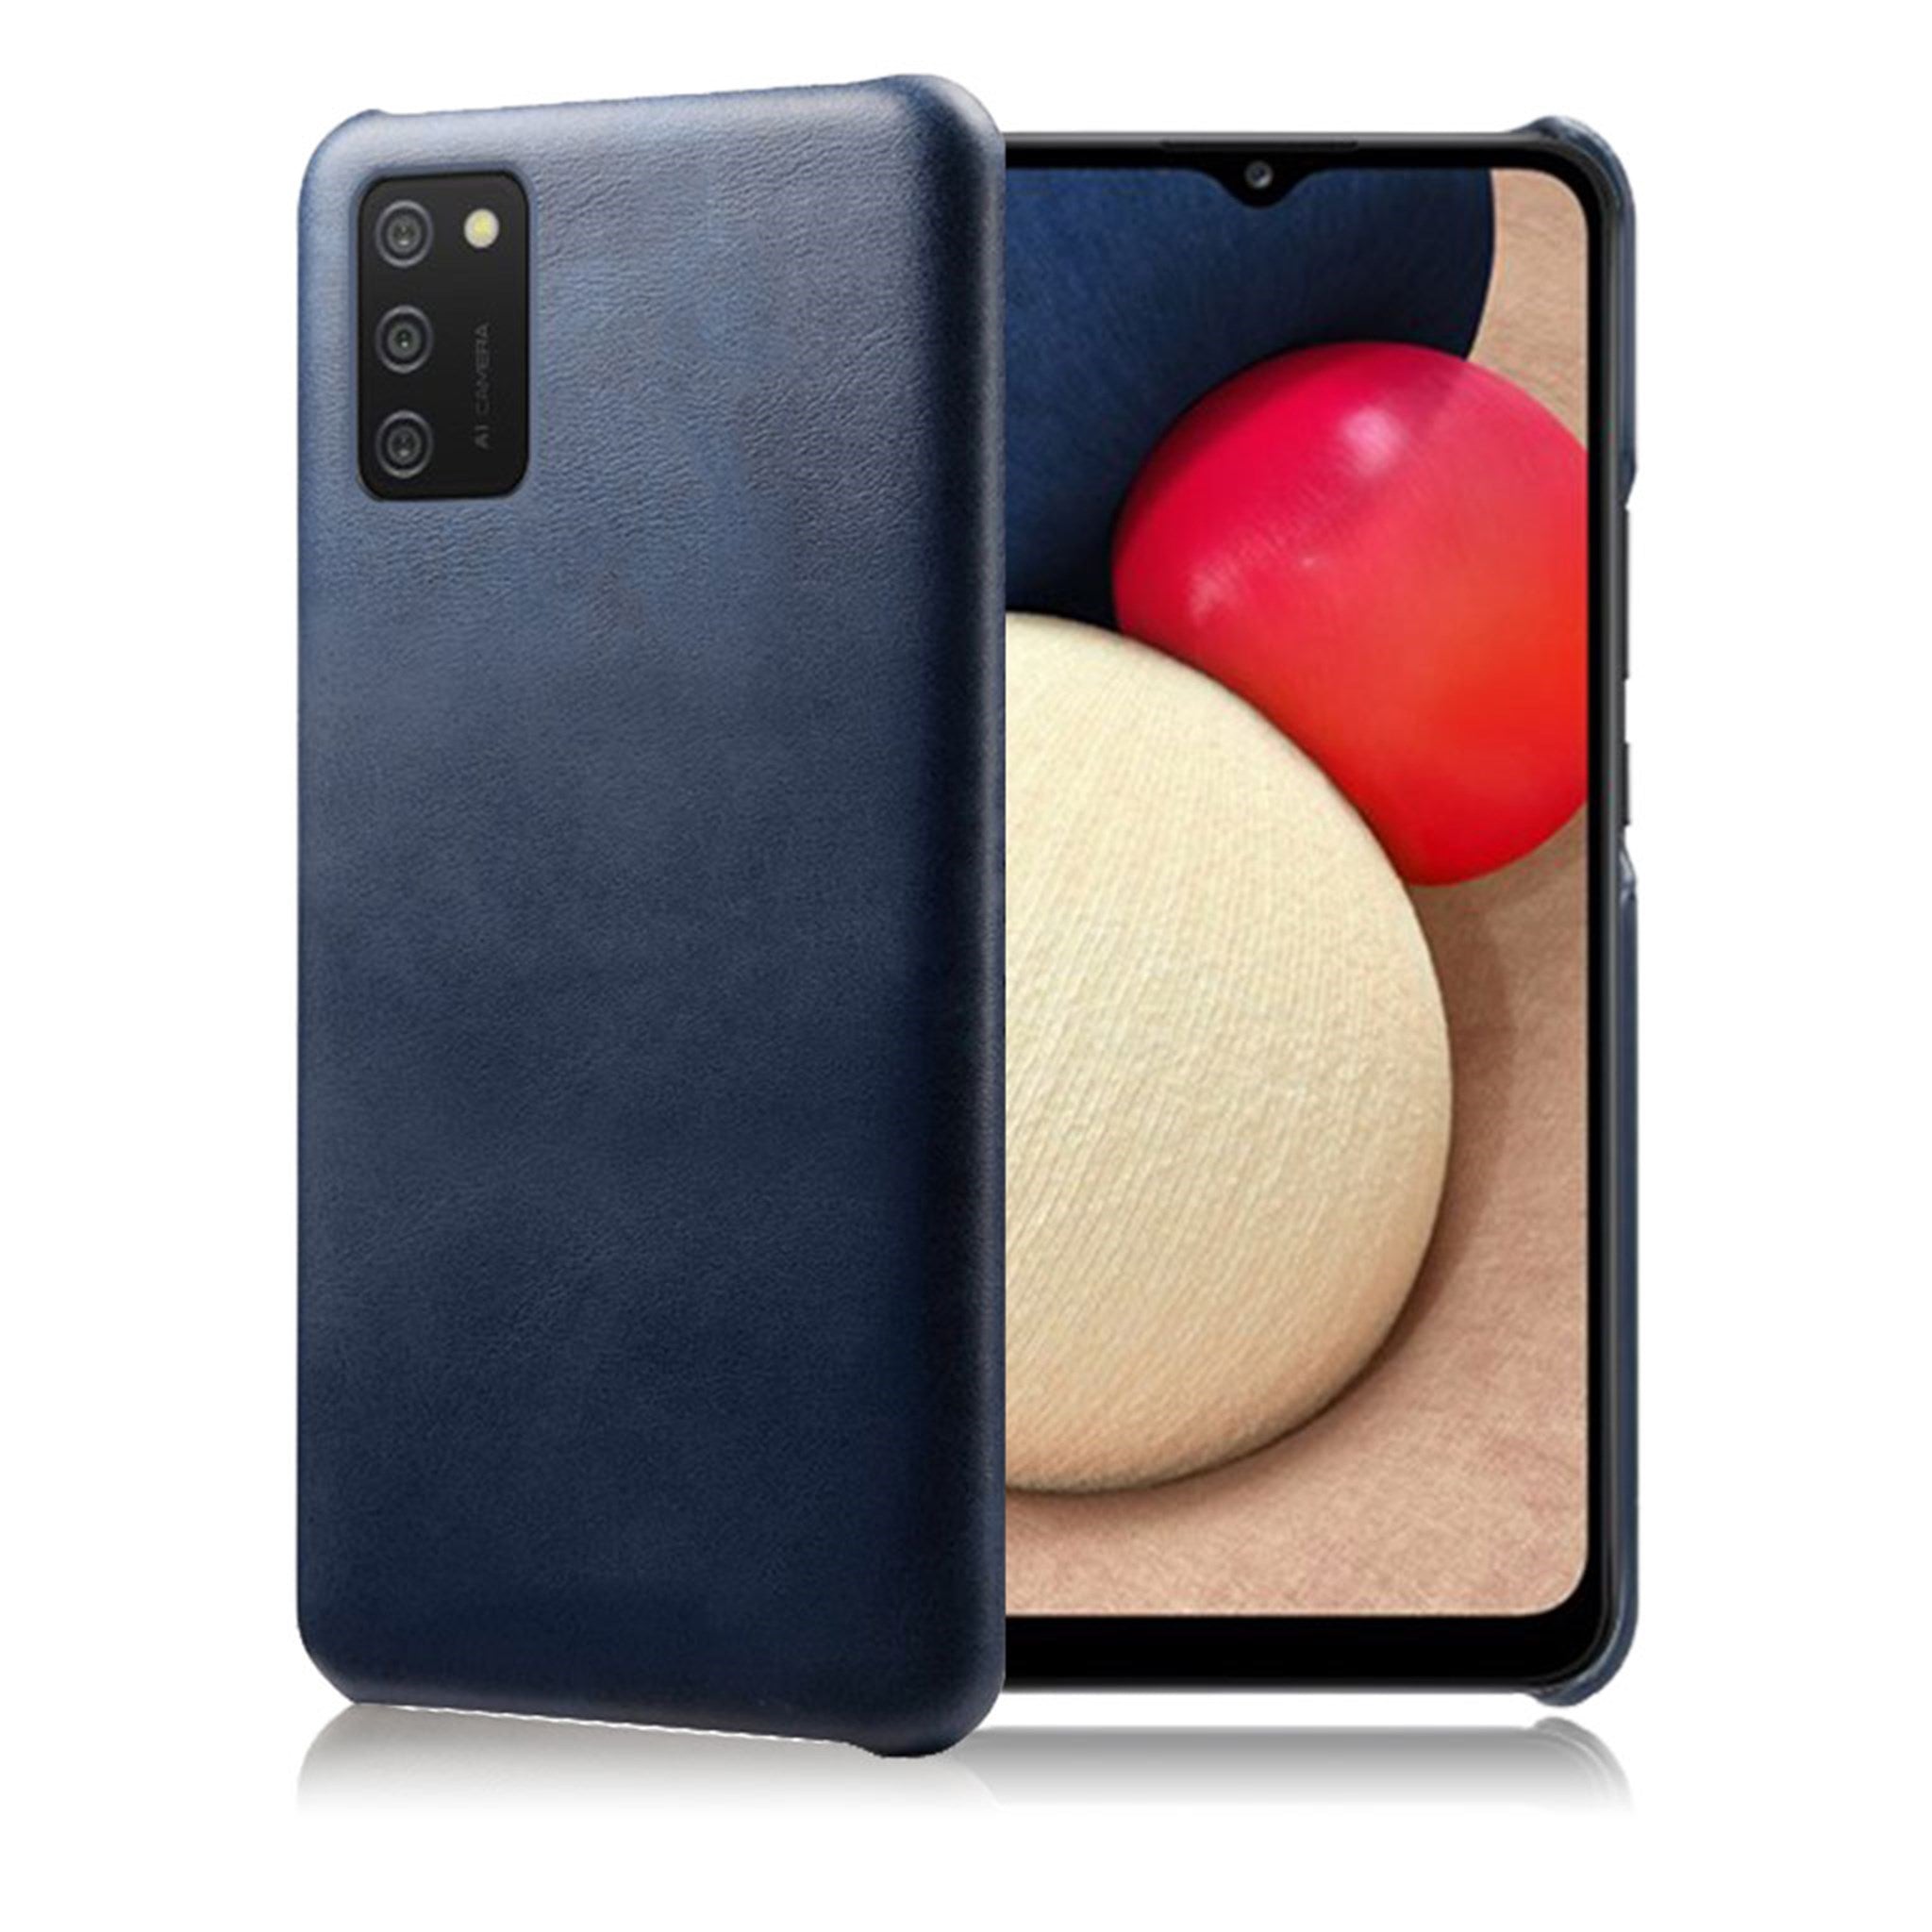 Prestige case - Samsung Galaxy A02s - Blue